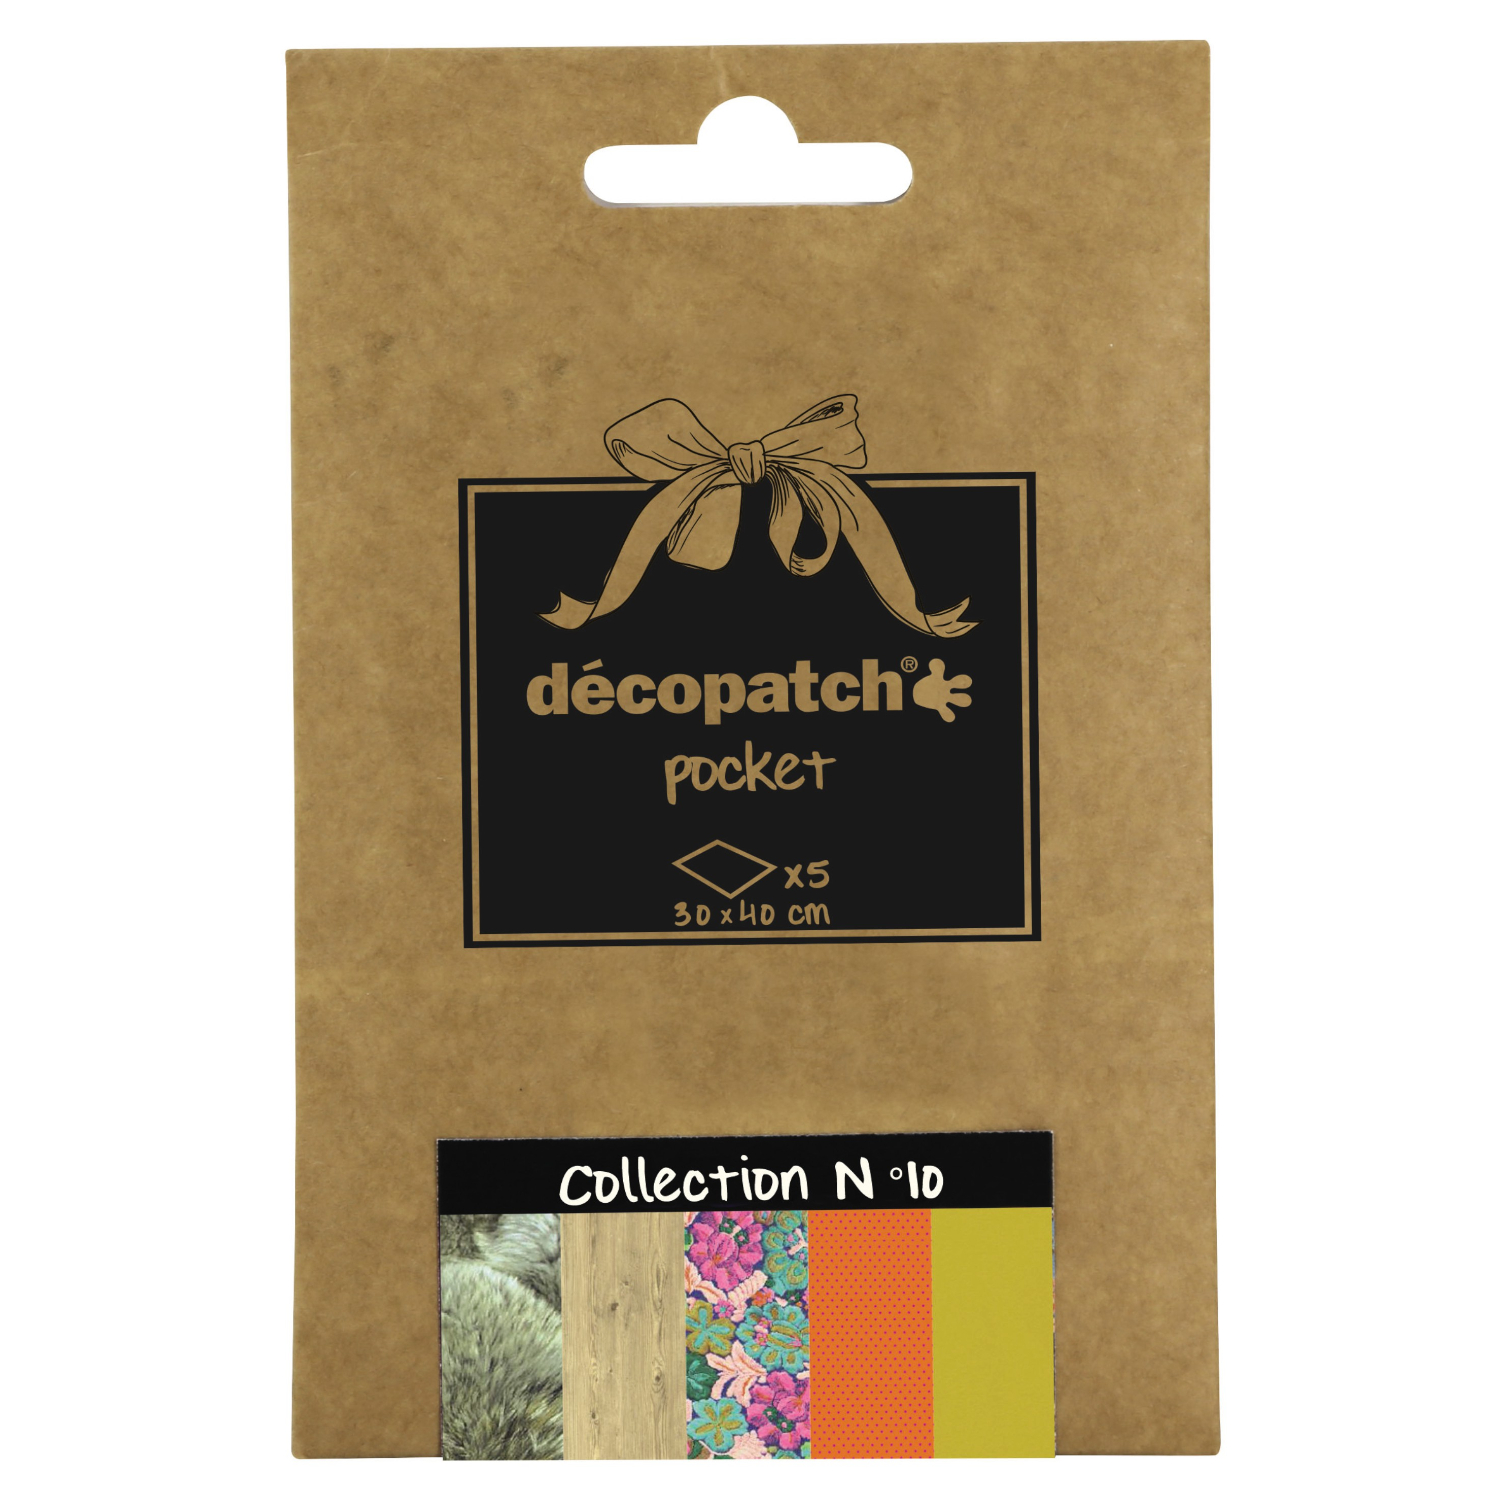 NEU Decoupage- / Decopatch-Papier Pocket-Sortierung, 5 Bogen 30 x 40 cm, Motive: 674, 673, 670, 671, 229